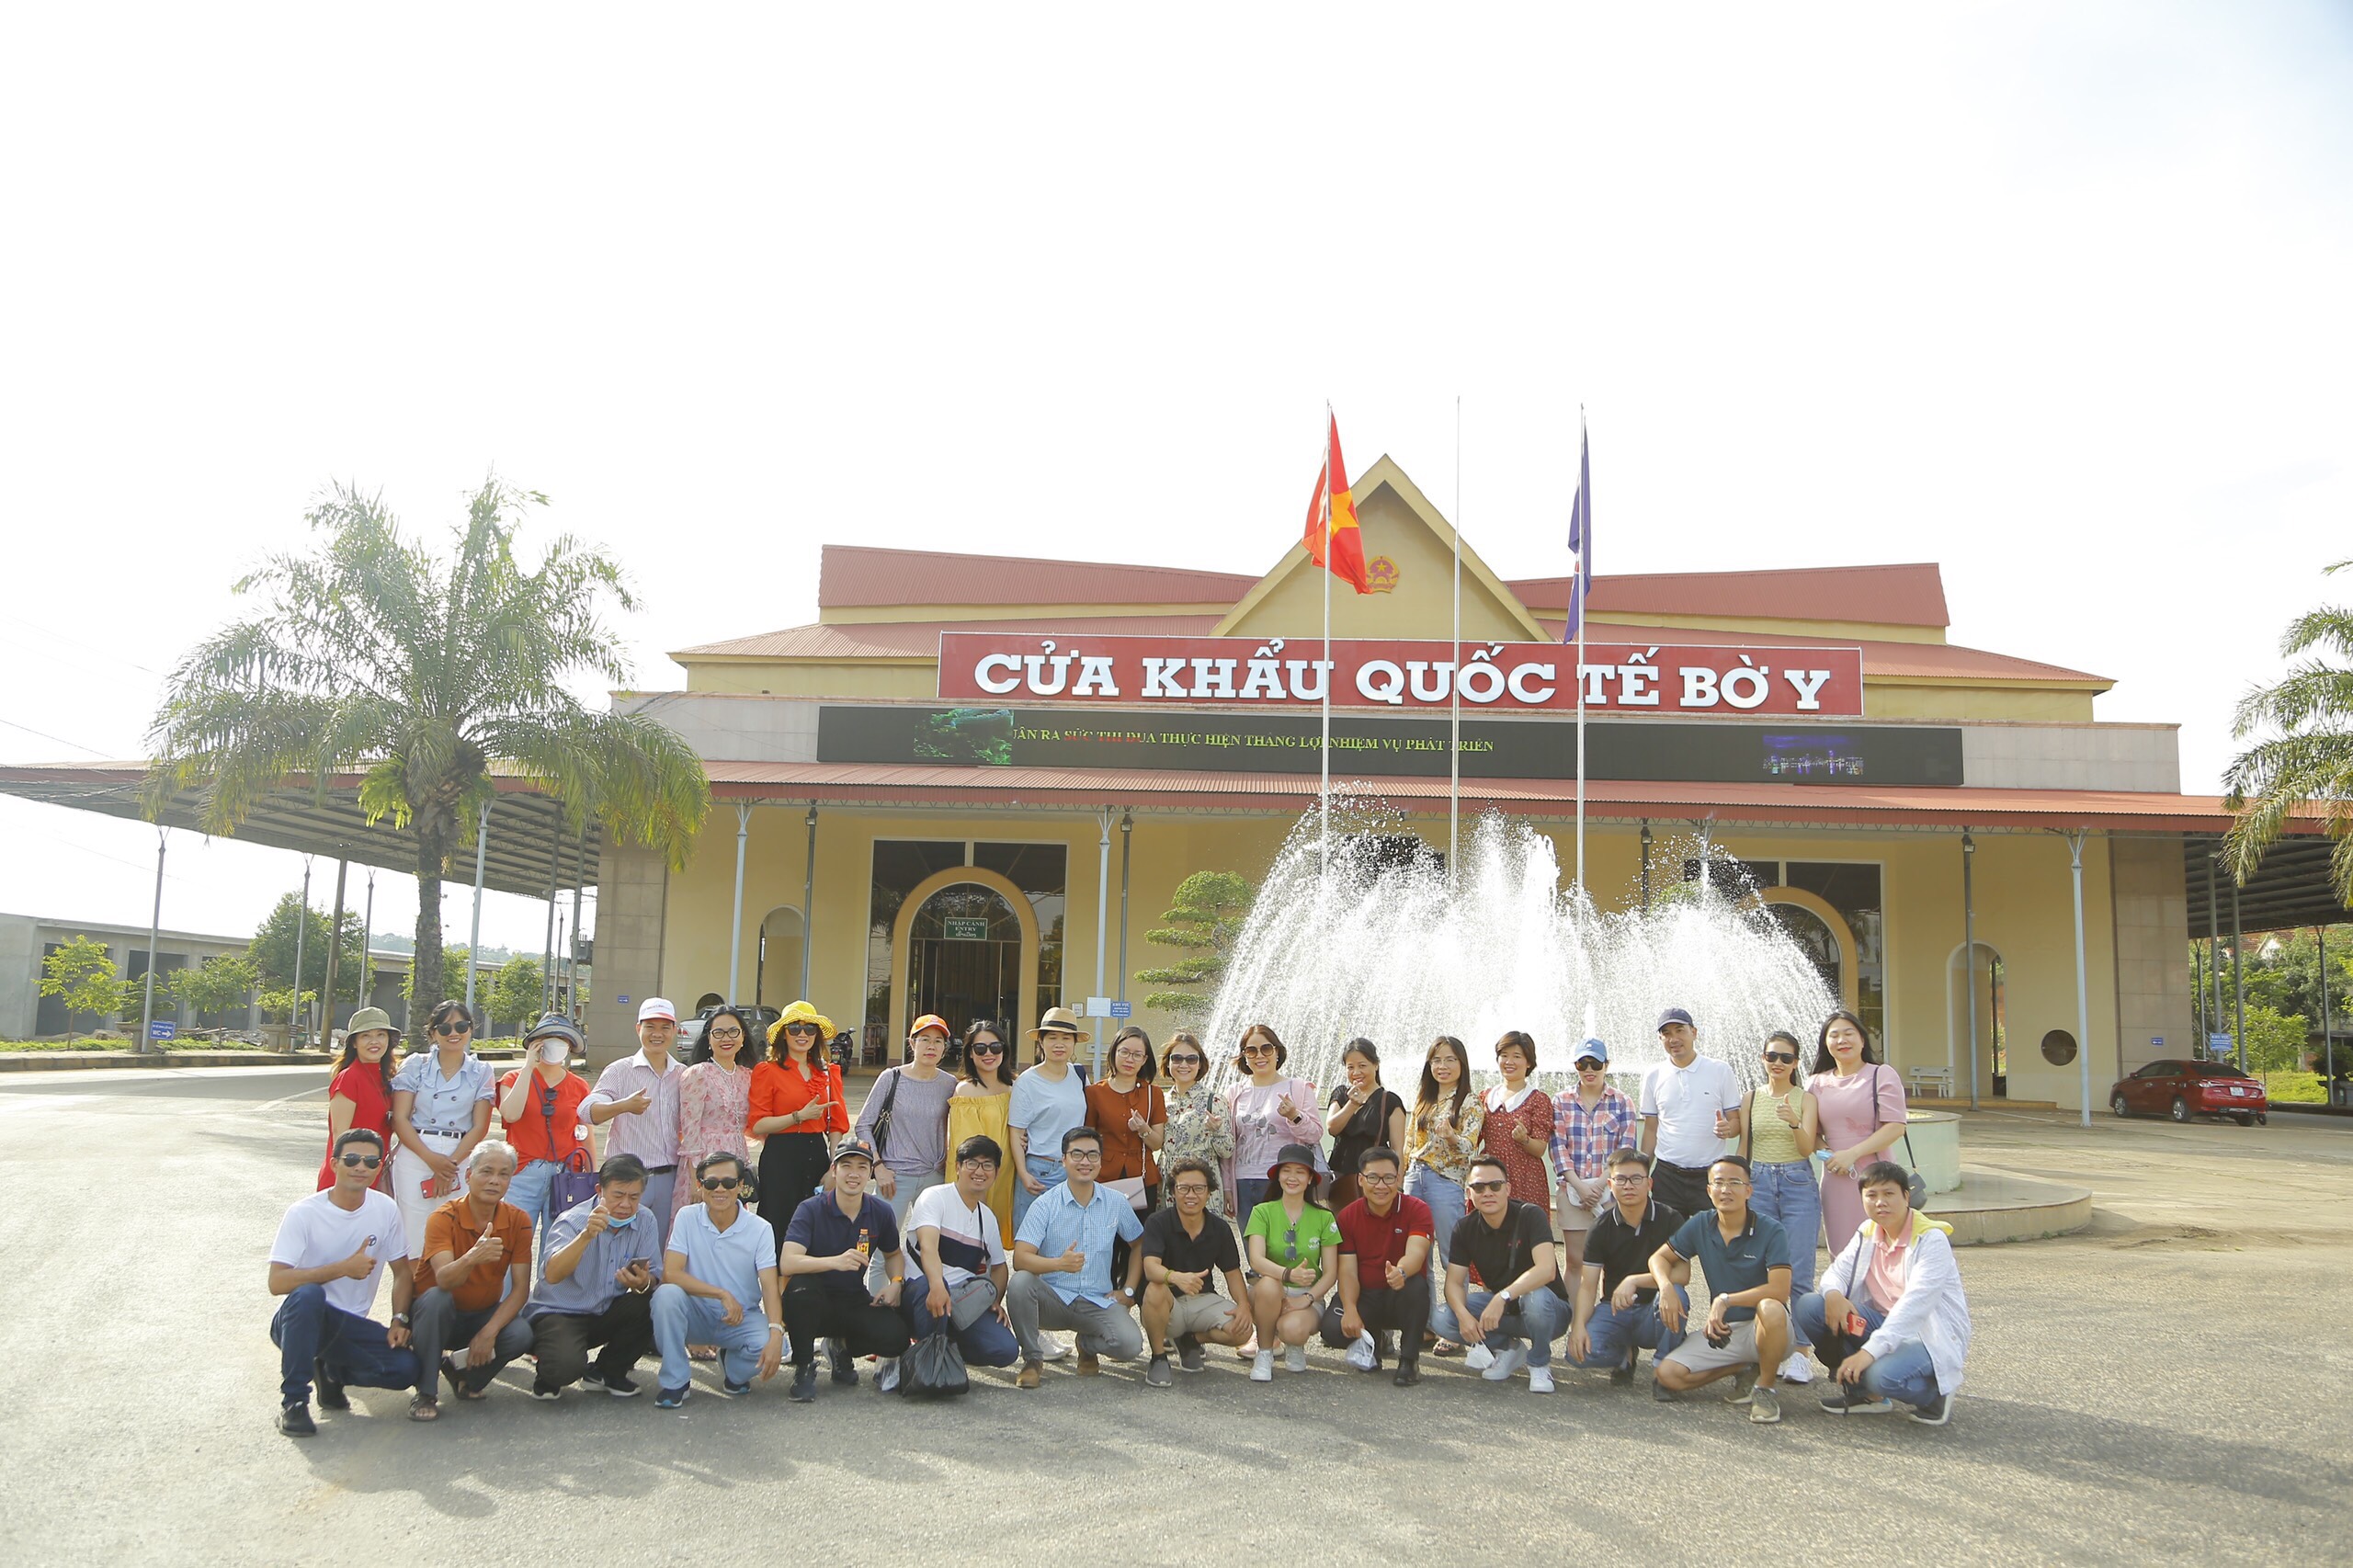 Đoàn khảo sát tham quan cửa khẩu quốc tế Bờ Y, Kon Tum